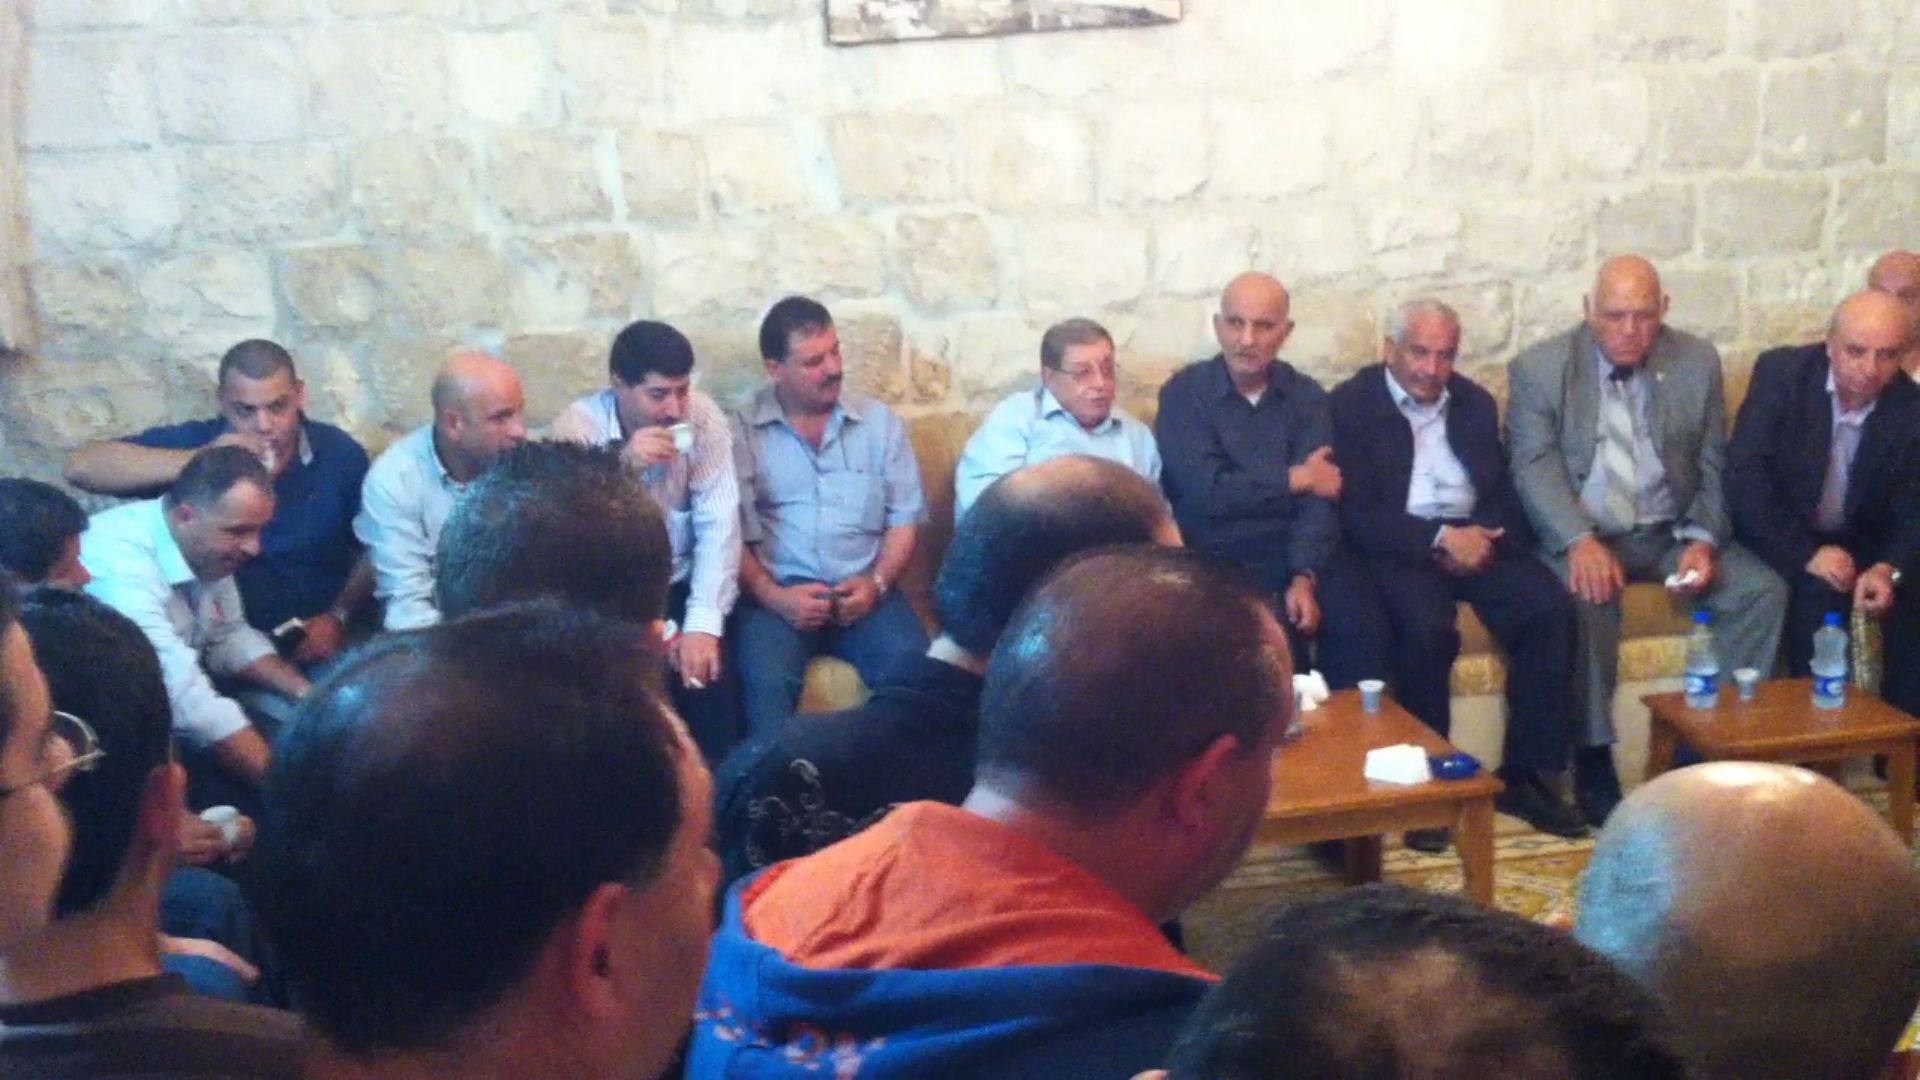 صورة اجتماع عام لأهالي المدينة مع رئيس البلدية المرحوم غسان الشكعة في الديوان : 21/10/2012